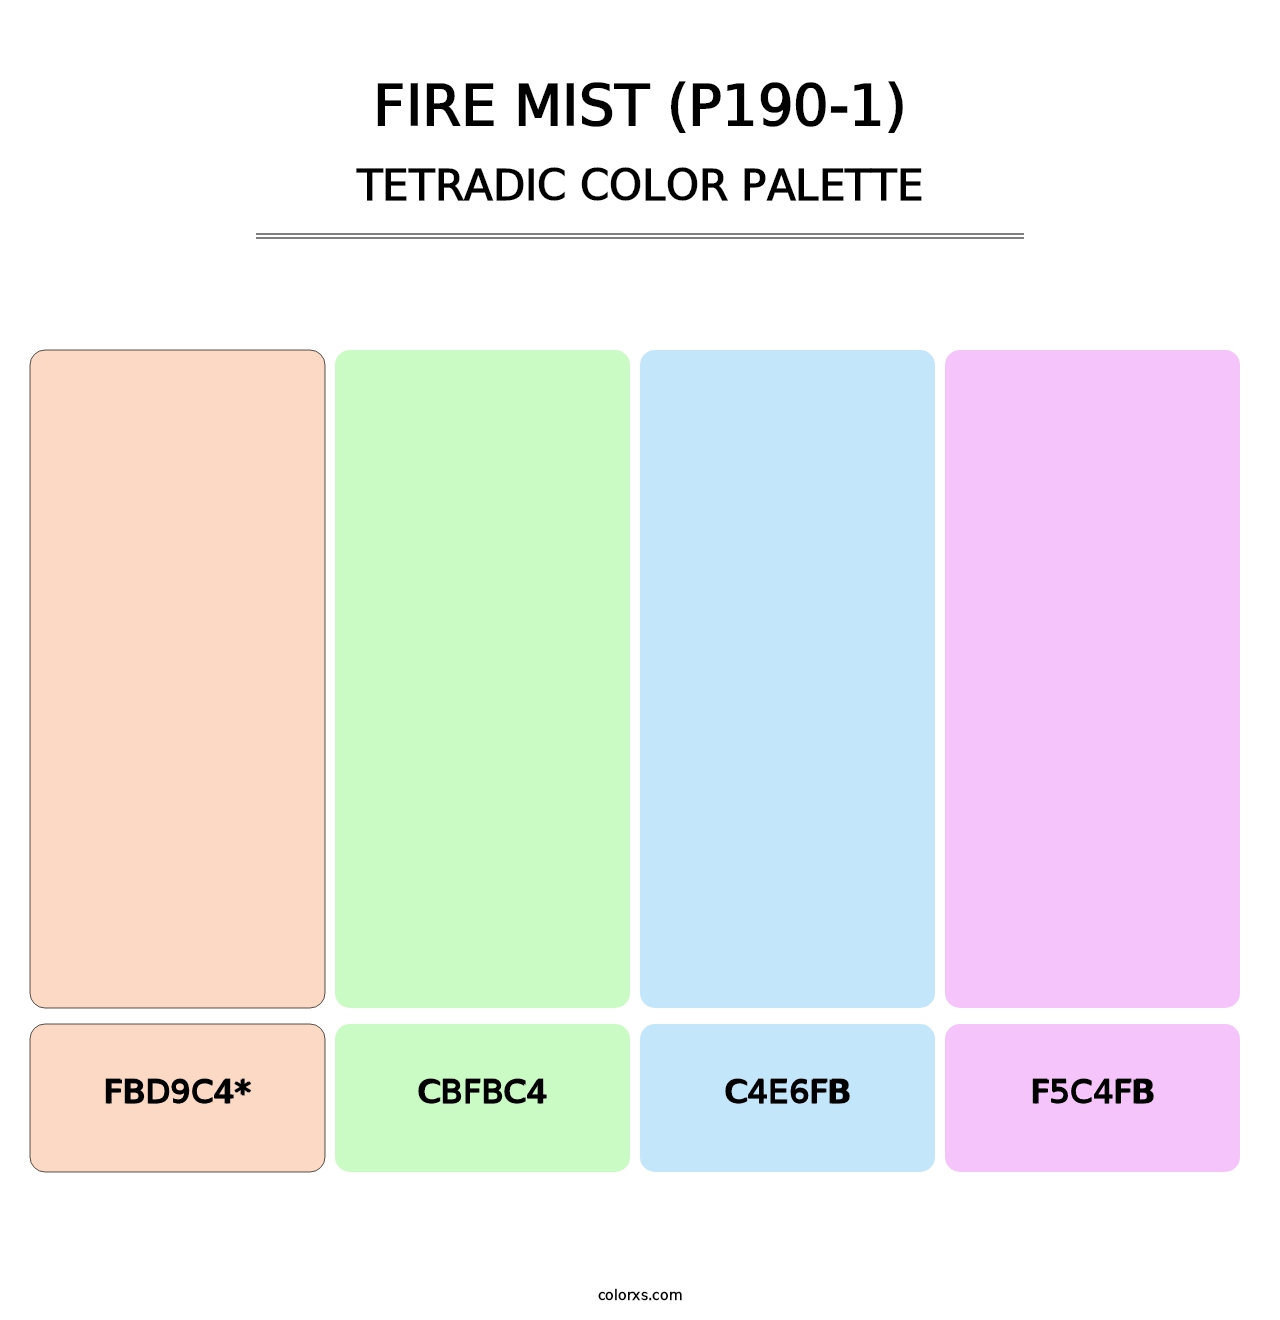 Fire Mist (P190-1) - Tetradic Color Palette